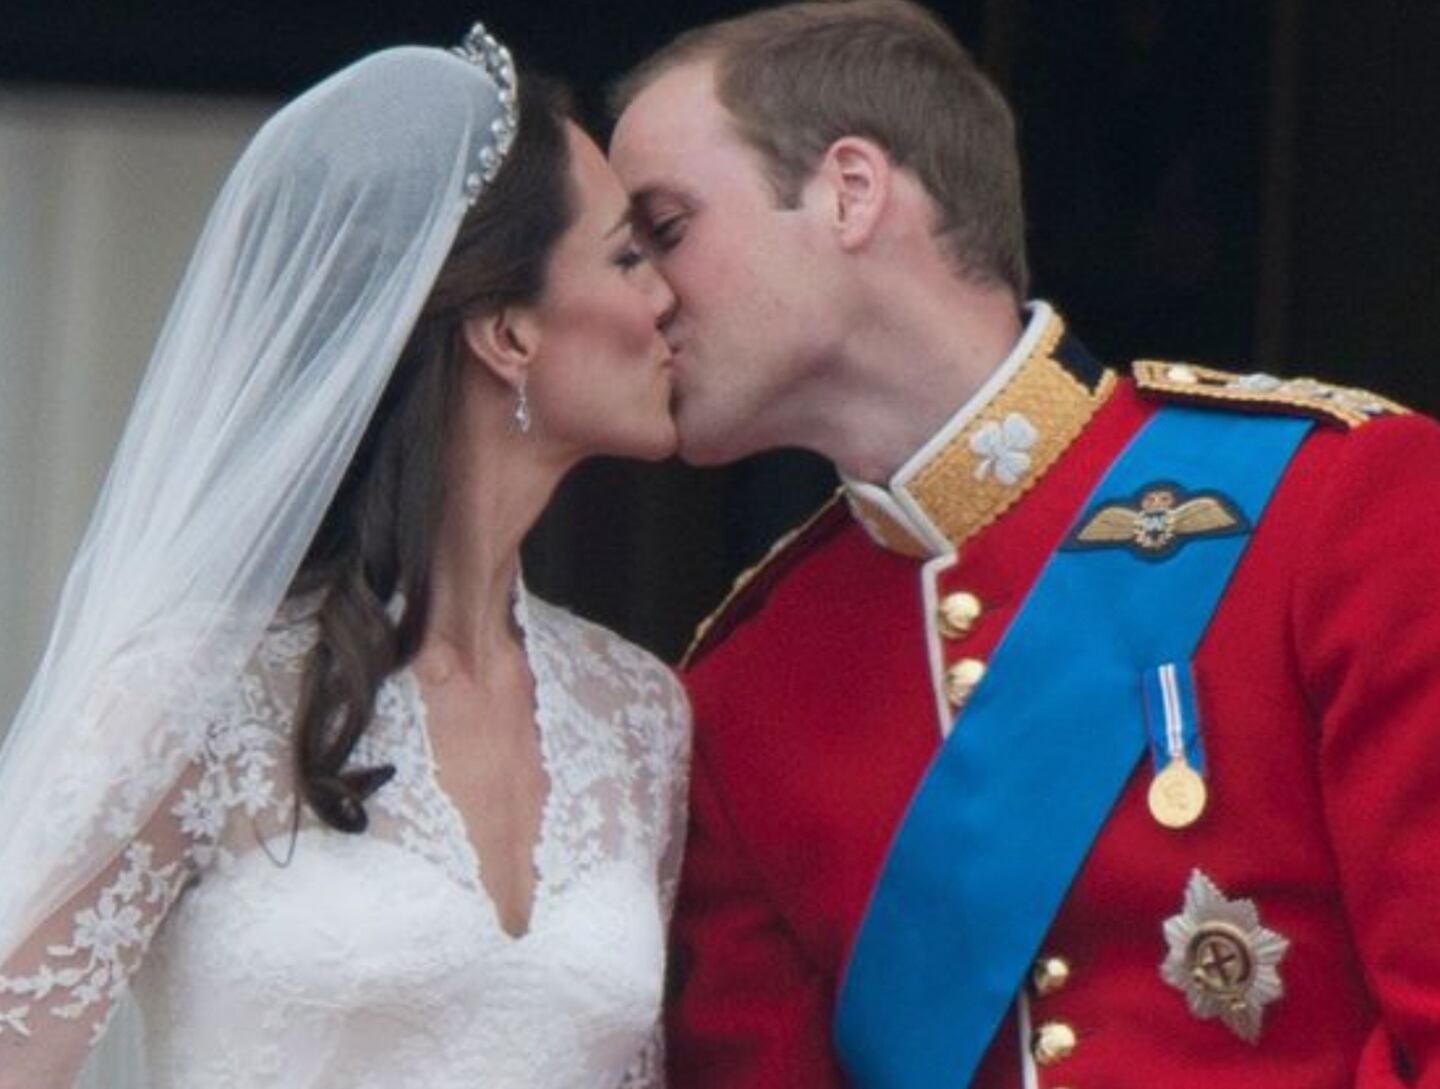 O príncipe William e Kate Middleton se conheceram em 2001, enquanto estudavam na Universidade de St. Andrews, na Escócia. Dez anos depois, em 29 de abril de 2011, estavam casados.